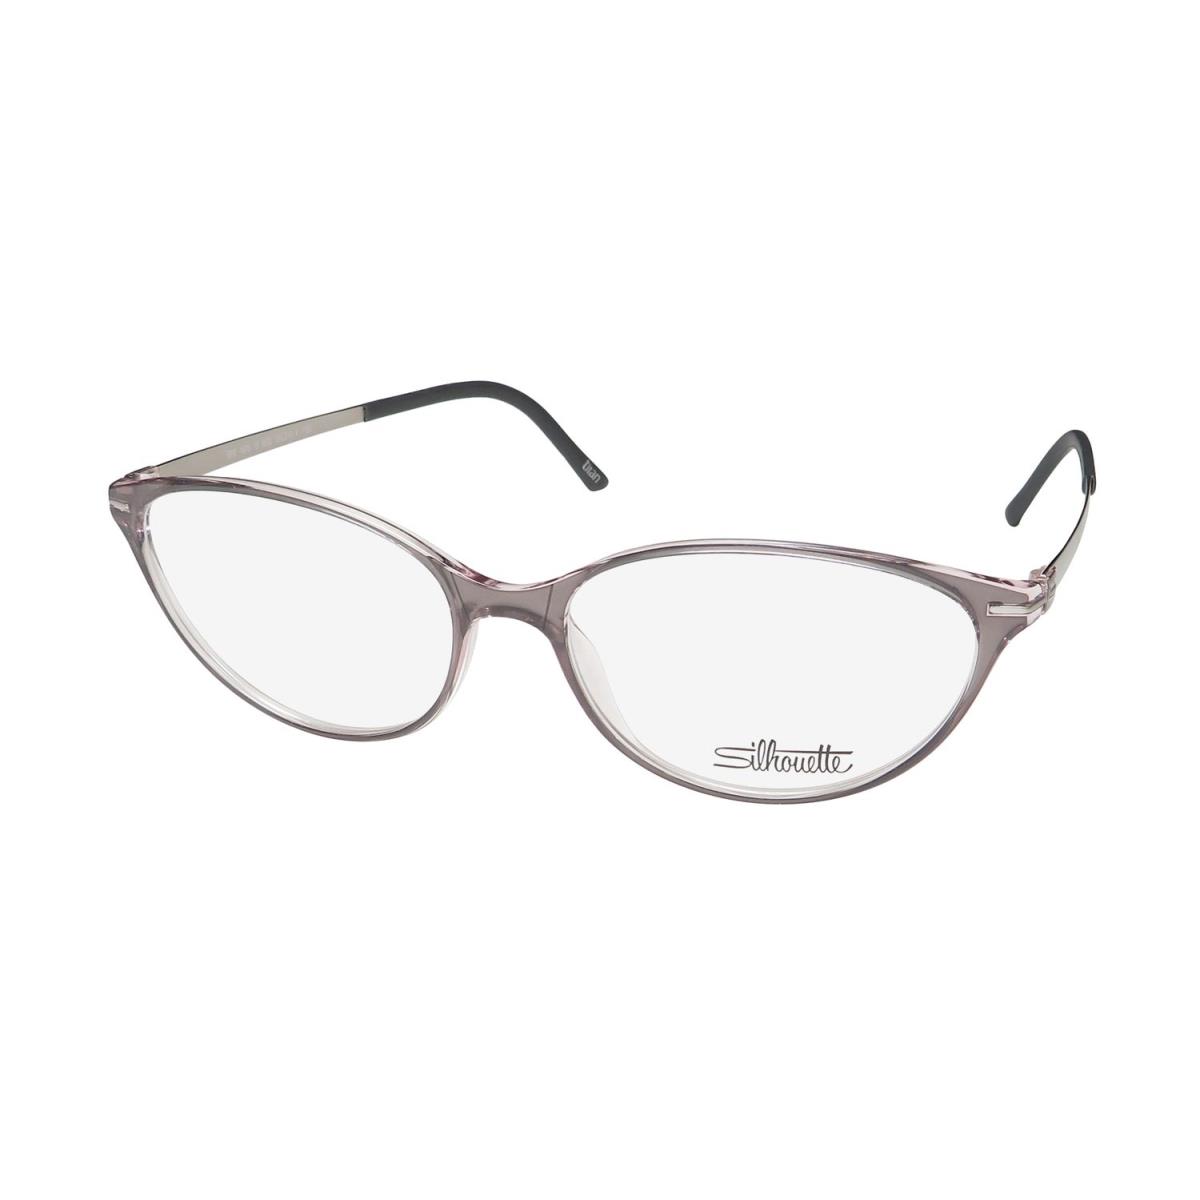 Silhouette 1578 School Teacher/librarian Look 60S/70S Eyeglass Frame/glasses Rose Gray